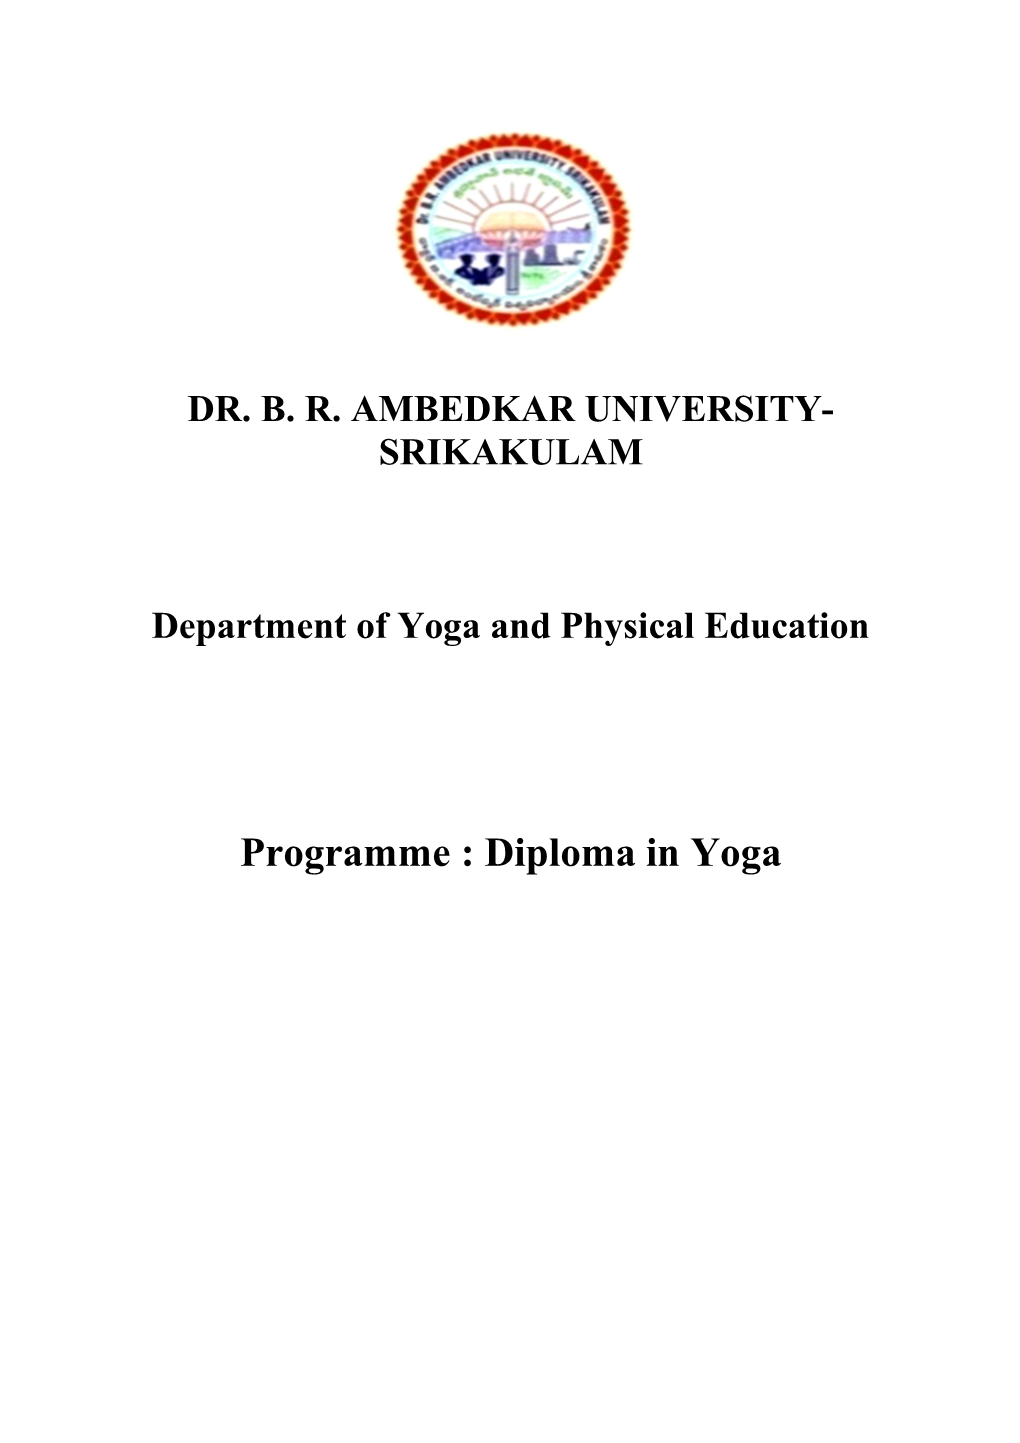 Diploma in Yoga Syllabus